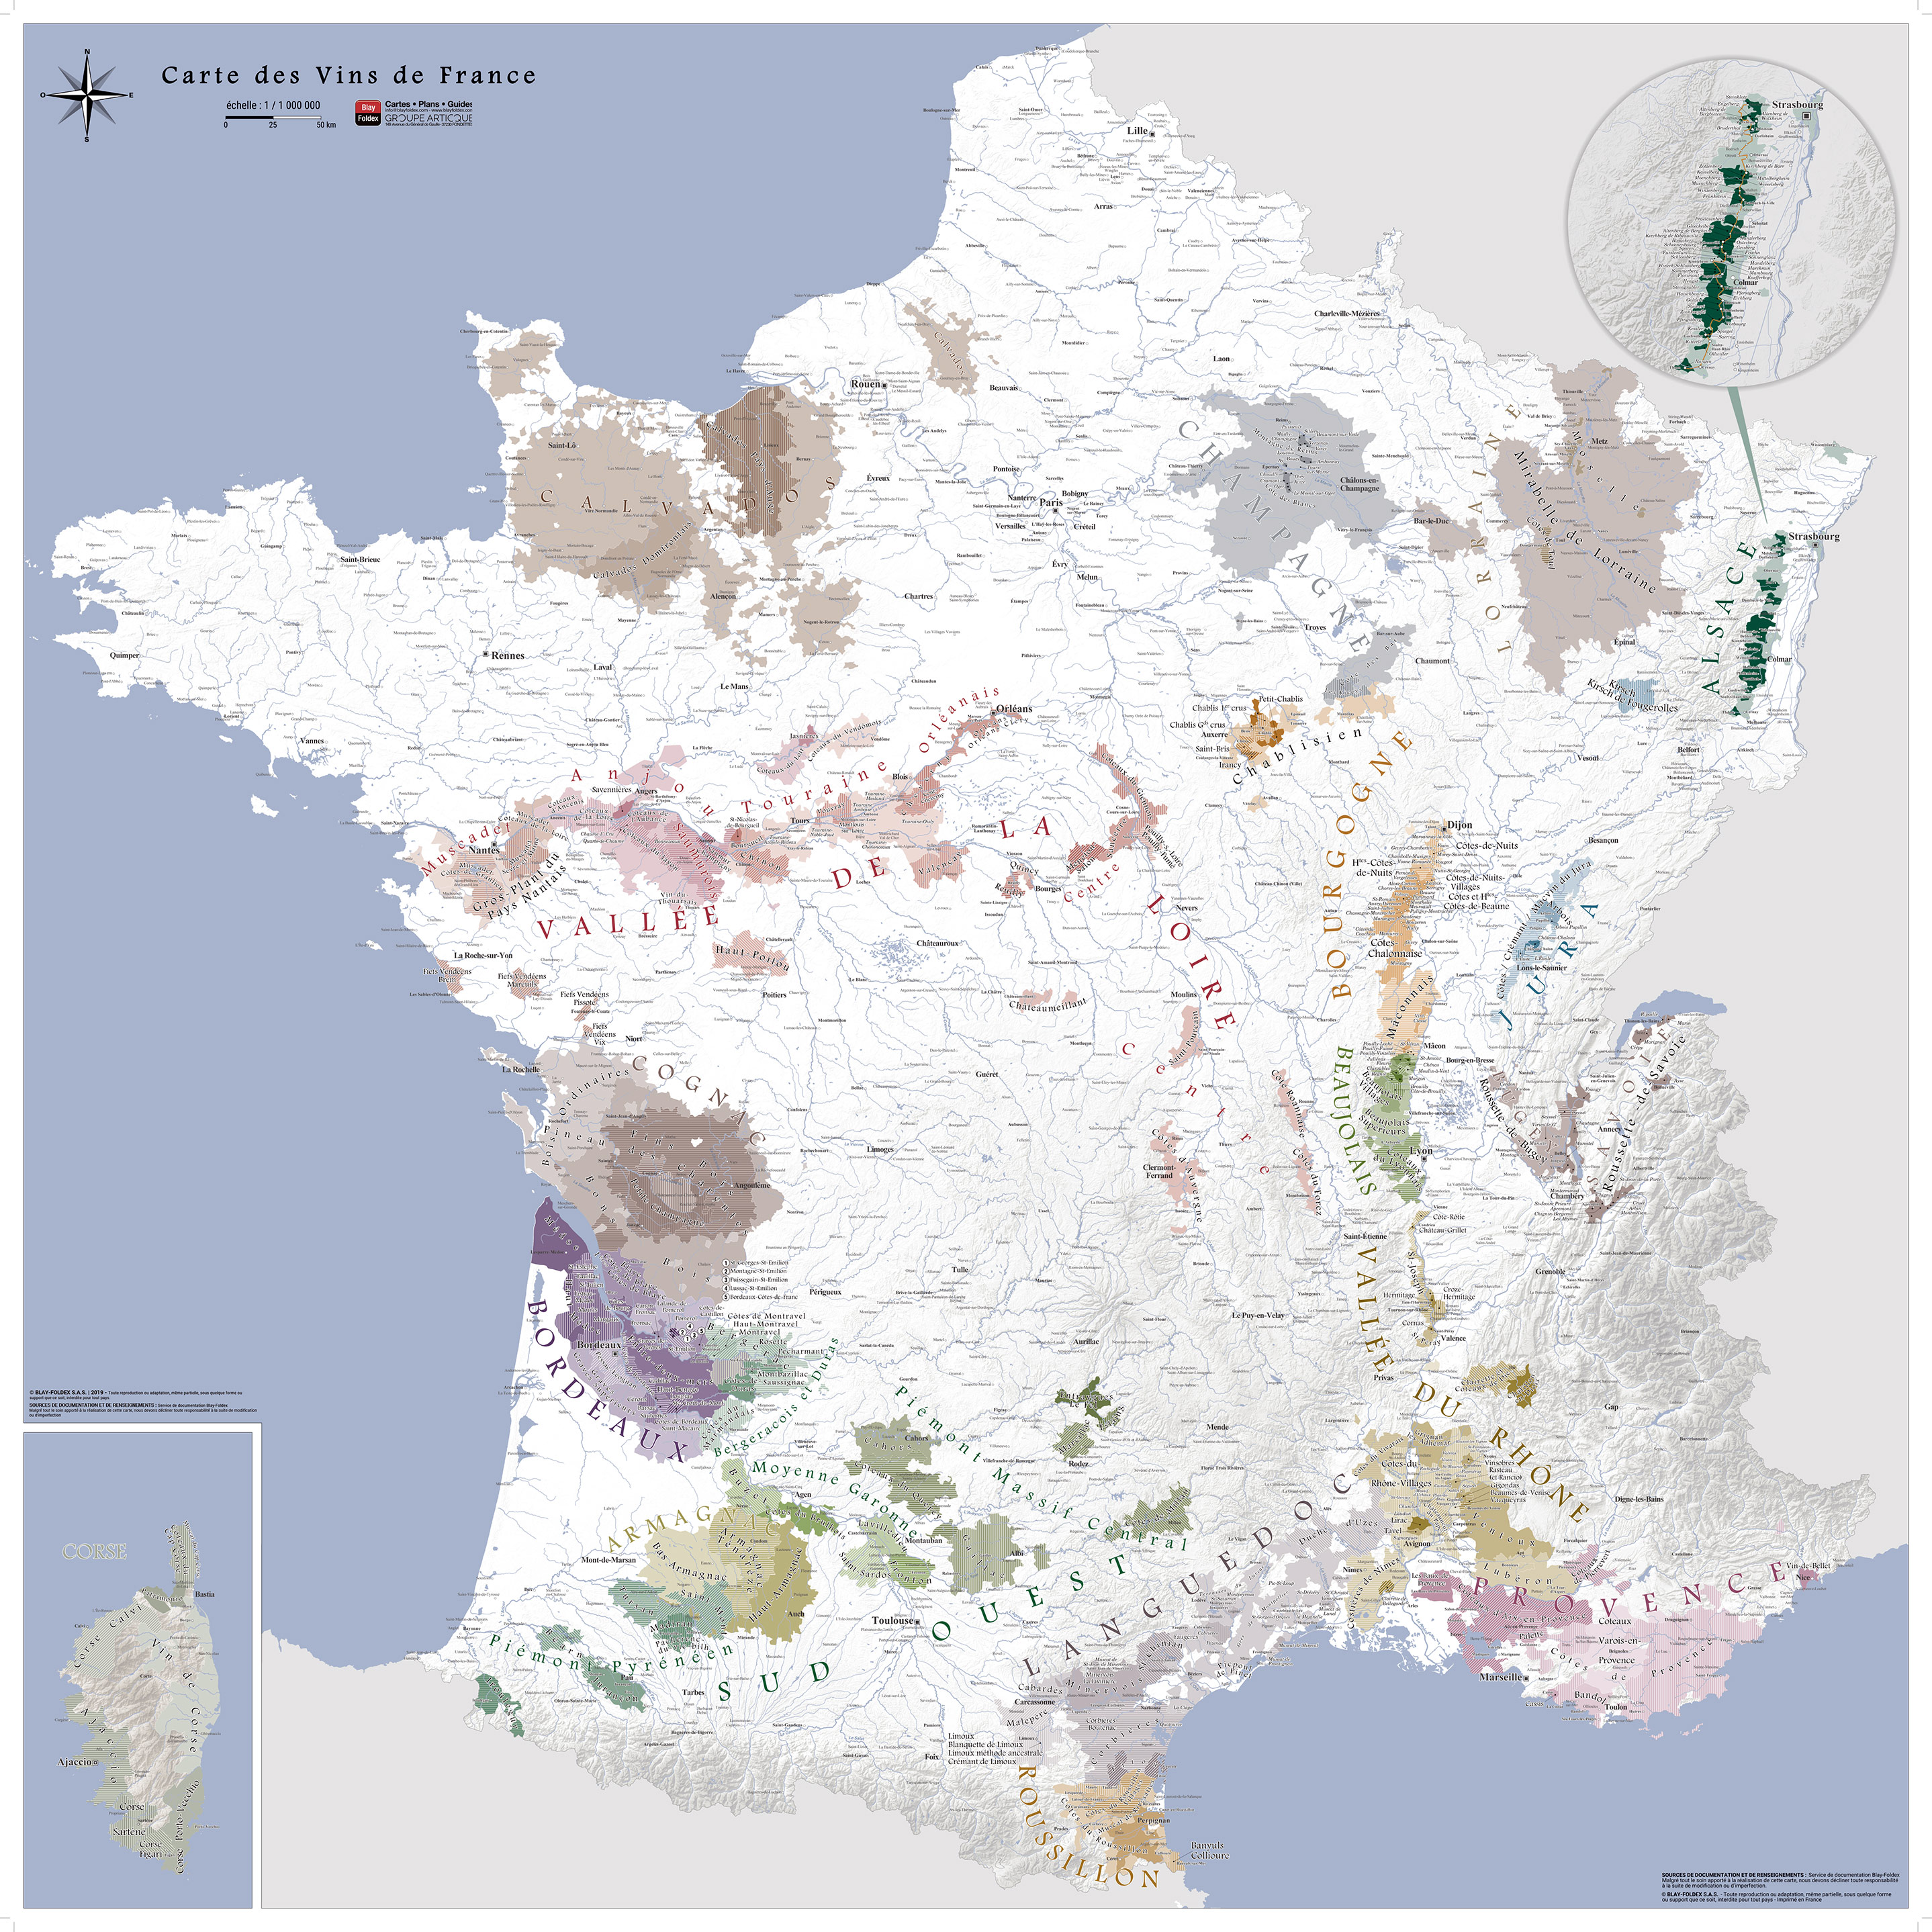 Carte des vins de France de style ancien (2020)